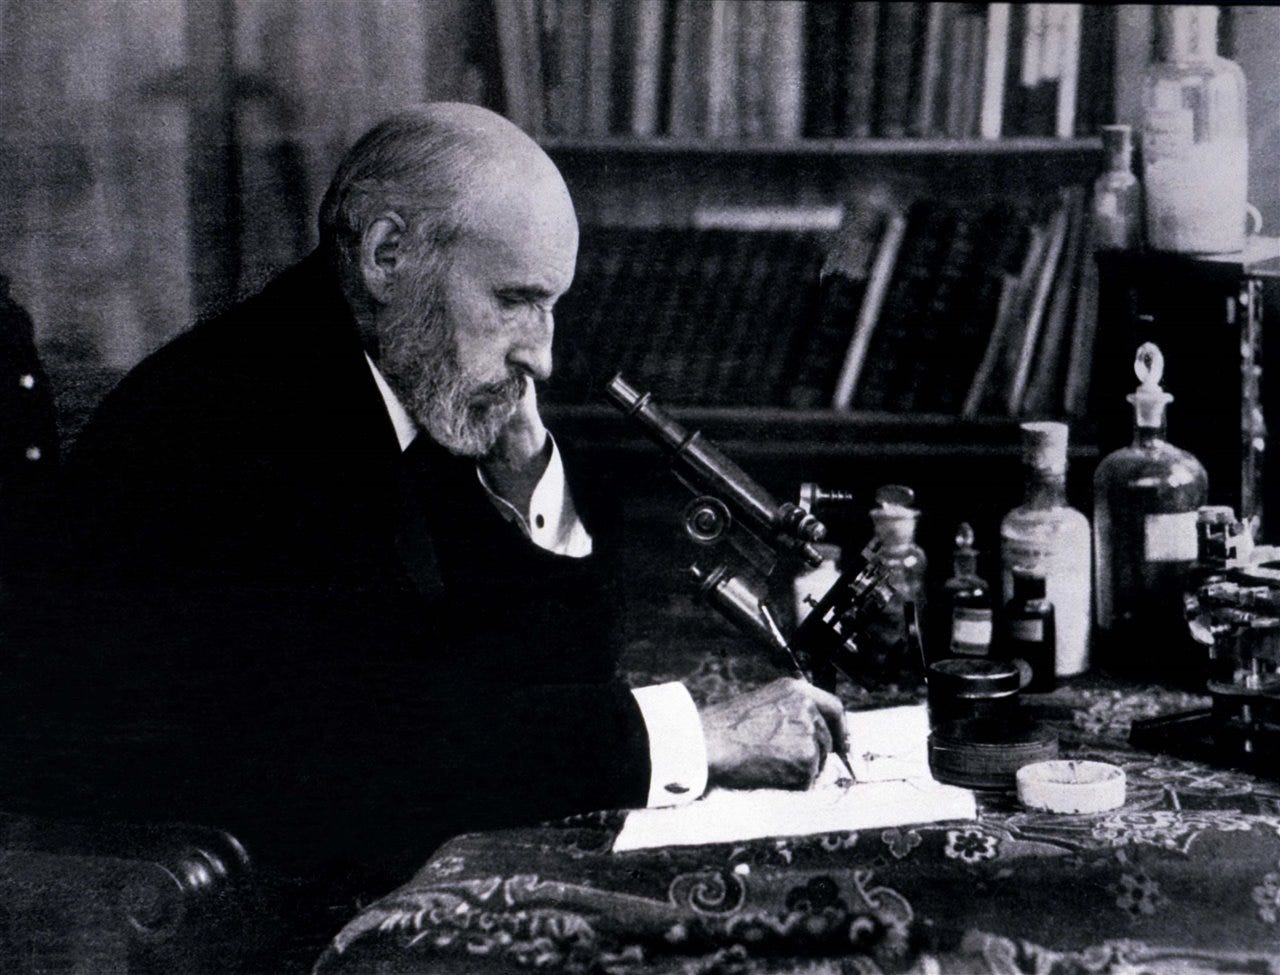 Santiago Ramón y Cajal (1852-1934)